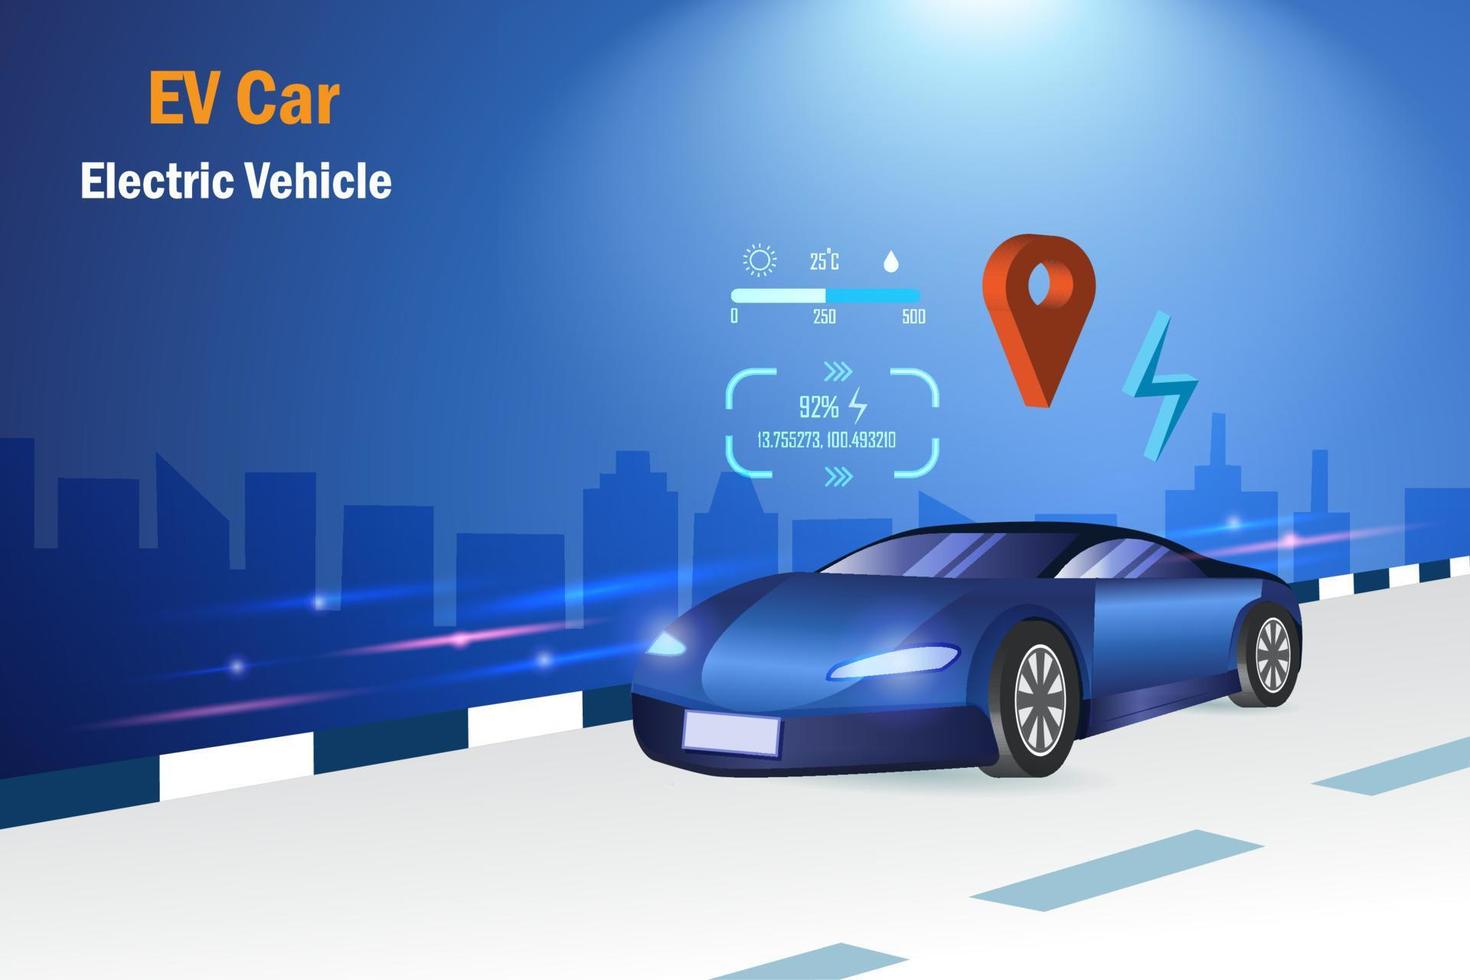 carro ev, veículo elétrico rodando na estrada com gps e indicadores de direção. energia alternativa sustentável em tecnologia de transporte. vetor